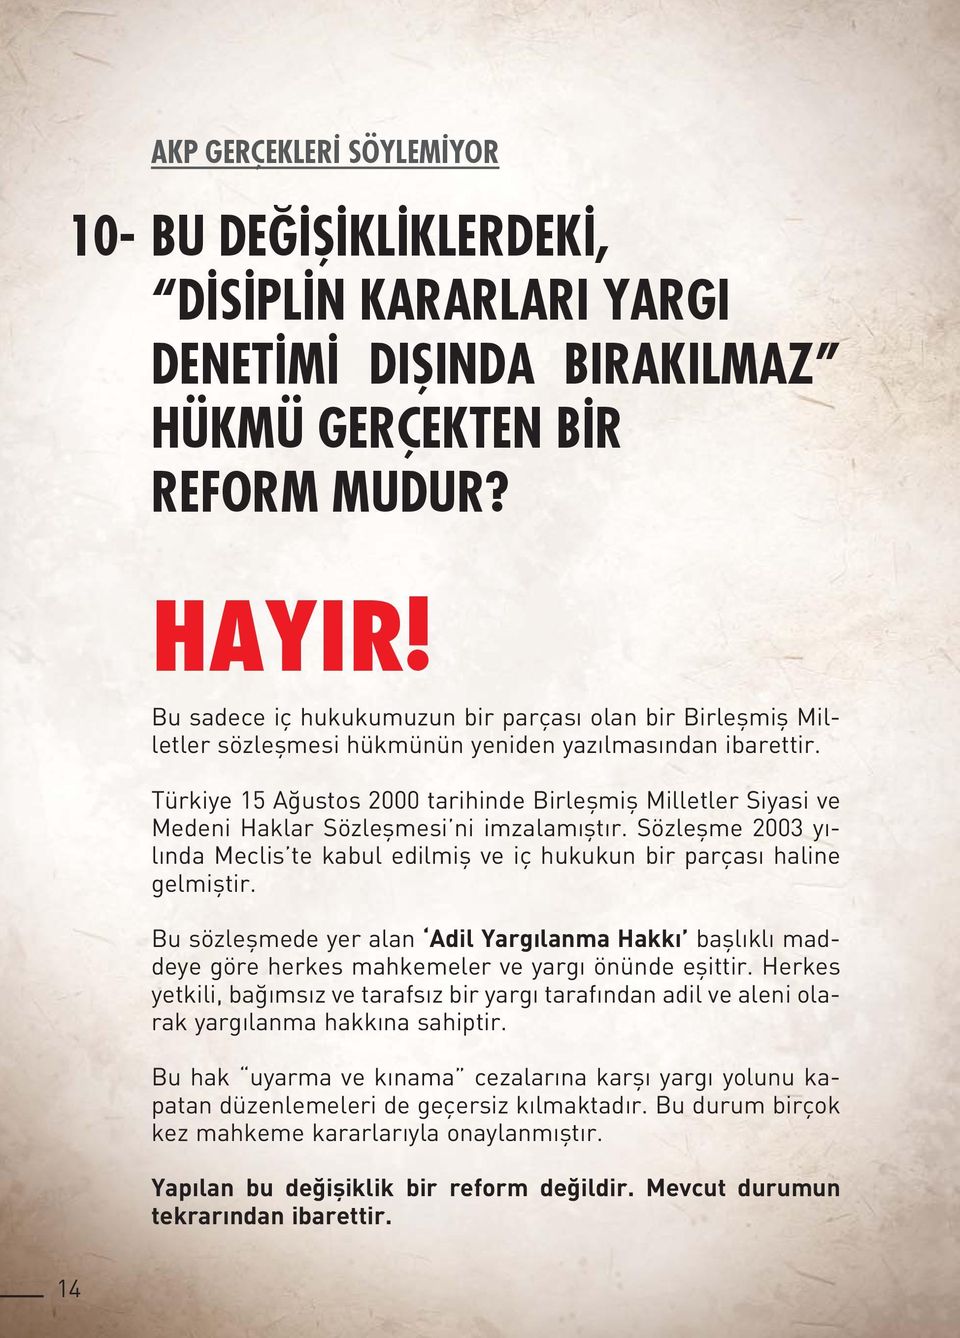 Türkiye 15 Ağustos 2000 tarihinde Birleşmiş Milletler Siyasi ve Medeni Haklar Sözleşmesi ni imzalamıştır. Sözleşme 2003 yılında Meclis te kabul edilmiş ve iç hukukun bir parçası haline gelmiştir.